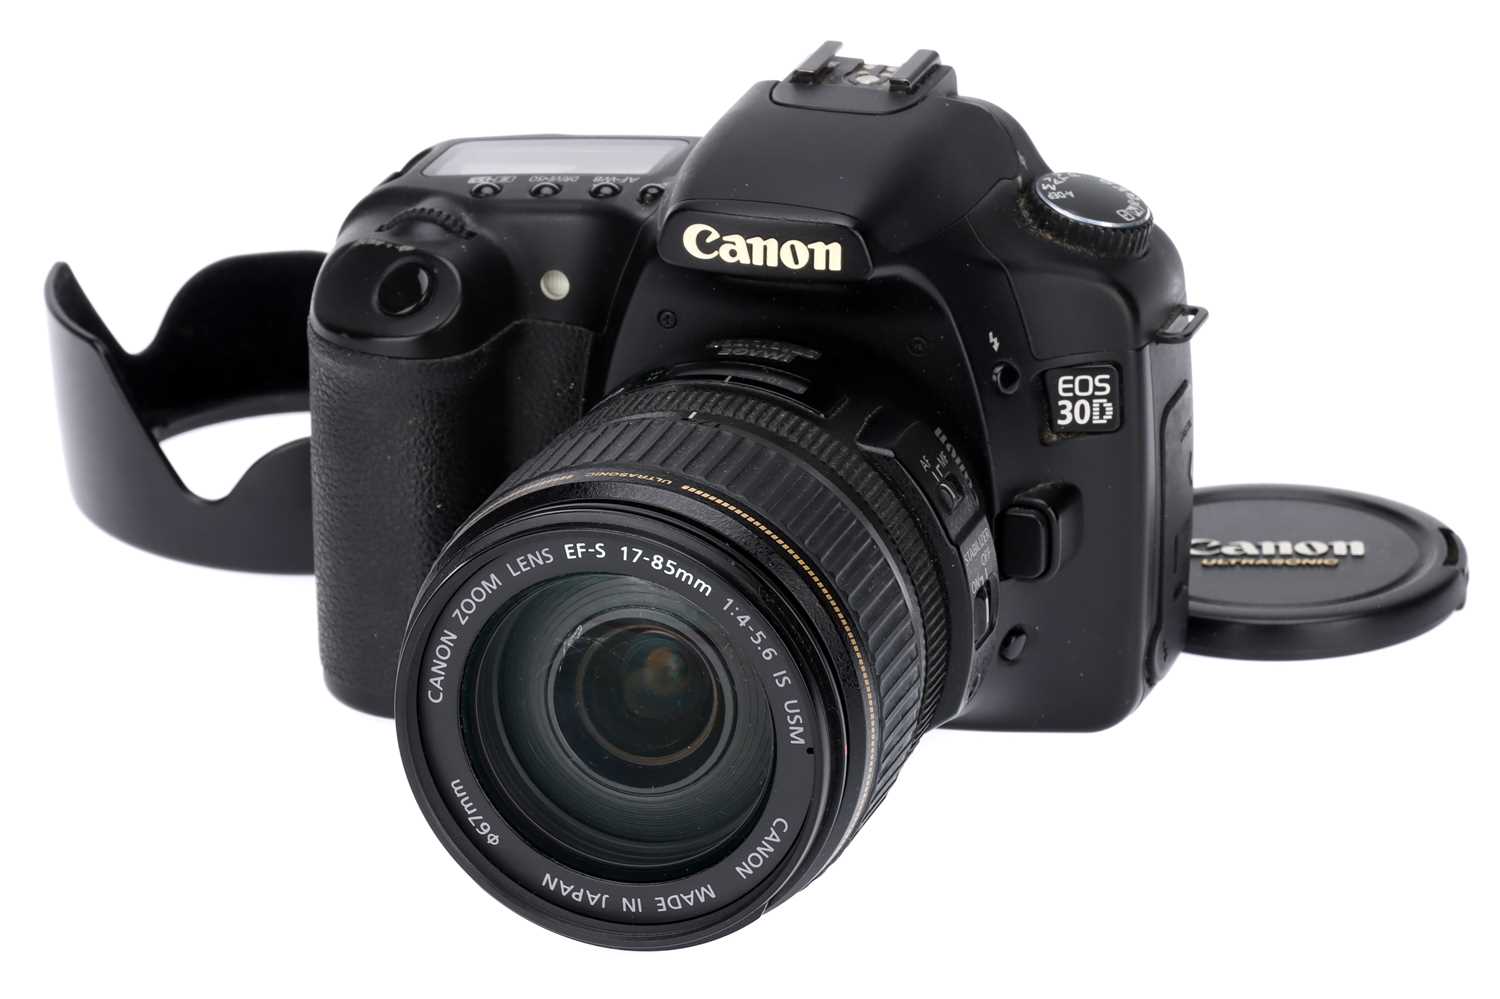 Lot 258 - A Canon EOS 30D Digital SLR Camera